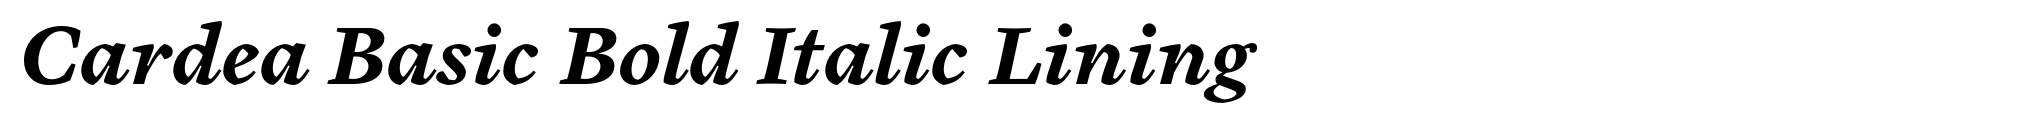 Cardea Basic Bold Italic Lining image